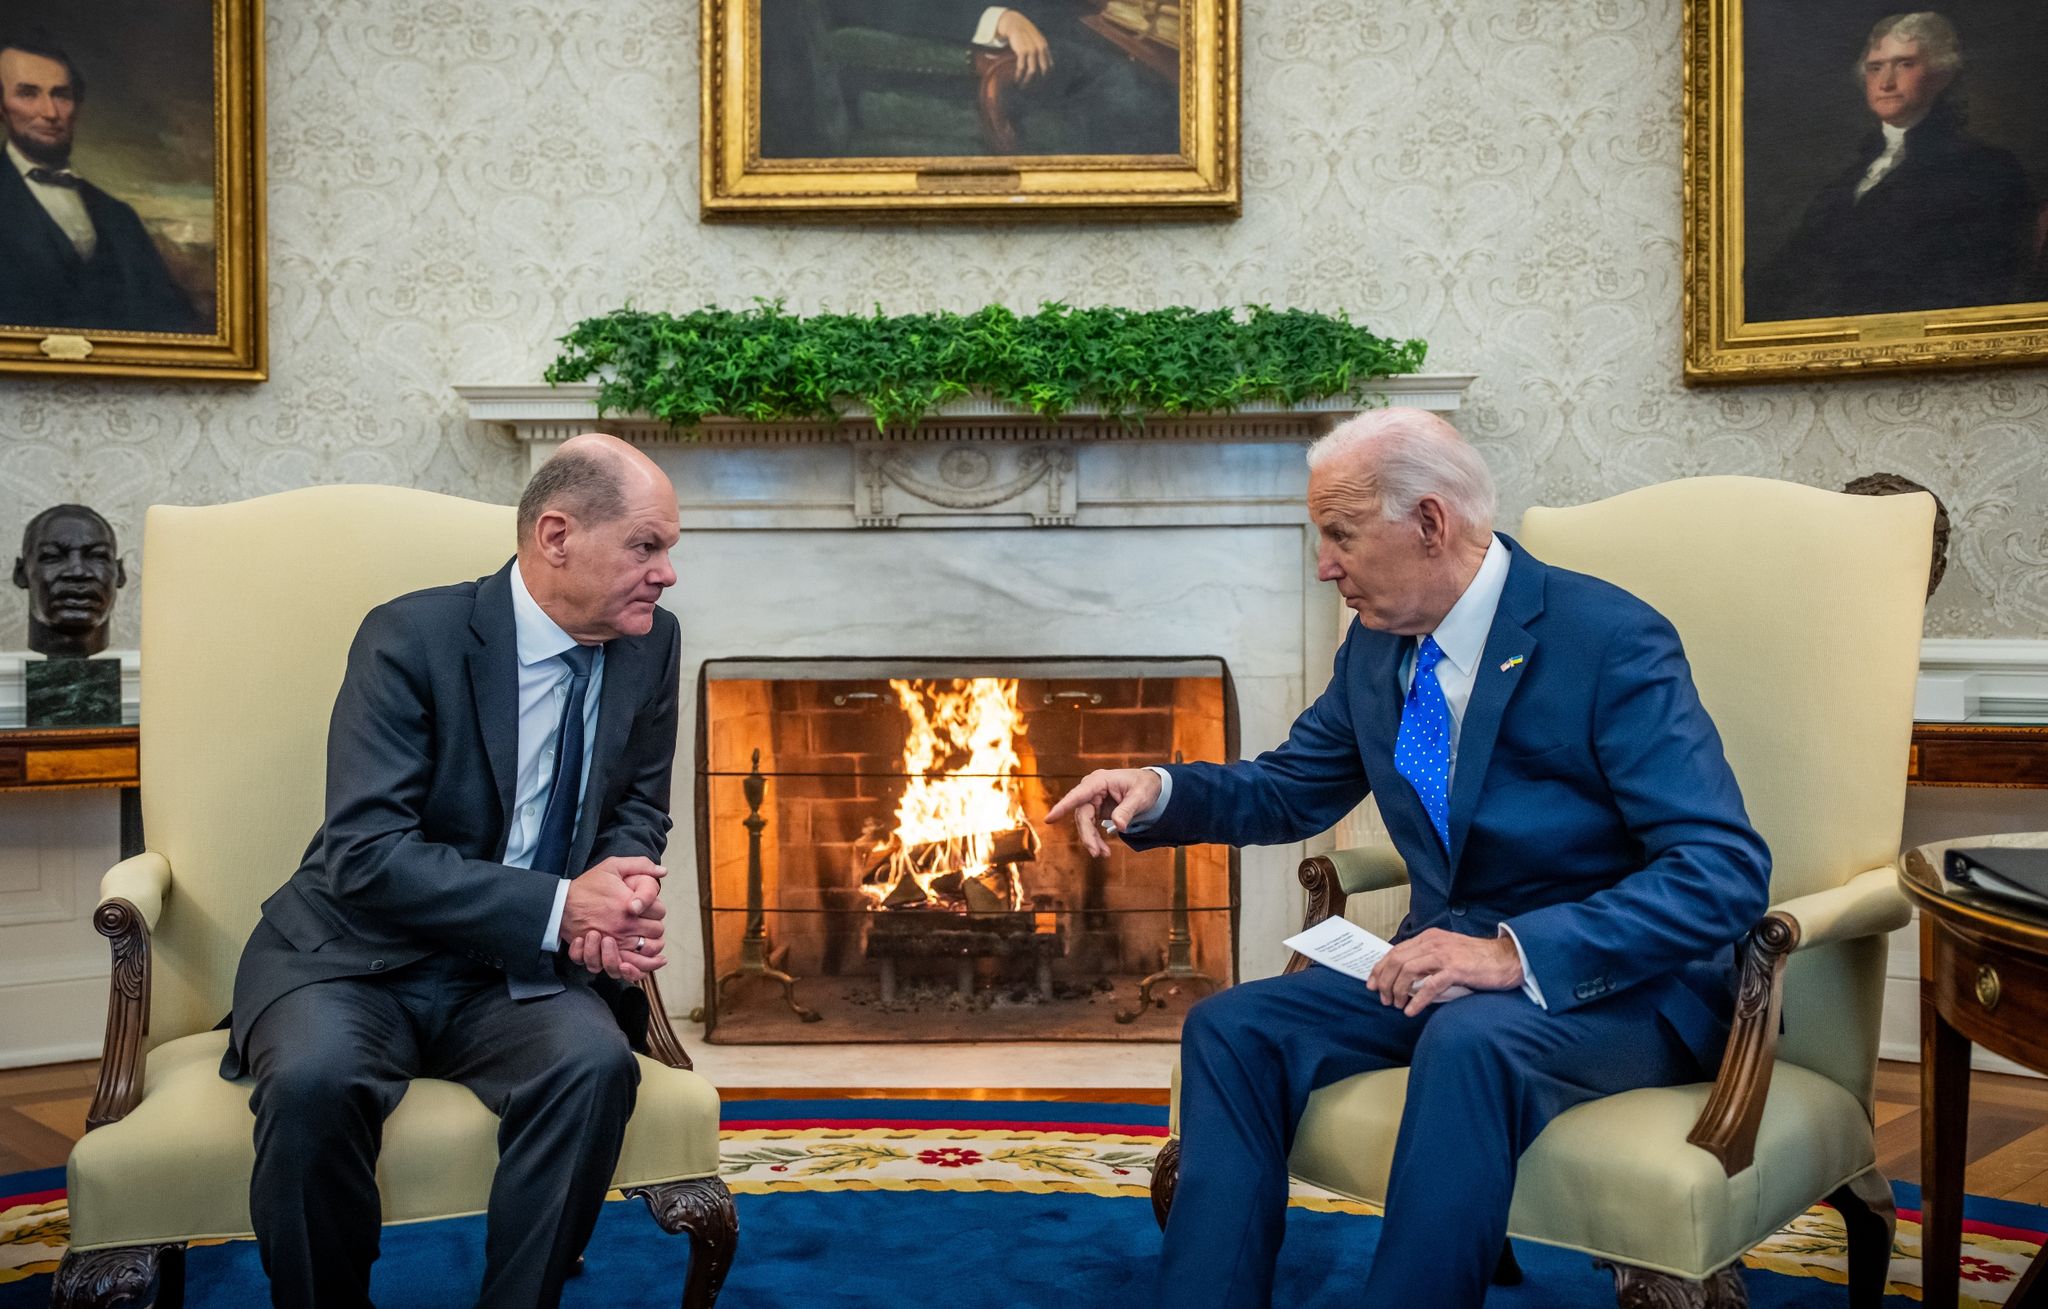 Zum dritten Mal in zwei Jahren ist Bundeskanzler Olaf Scholz zu Gast bei US-Präsident Joe Biden im Weißen Haus. Gesprächsthemen: Die Lage in der Ukraine und im Nahen Osten.